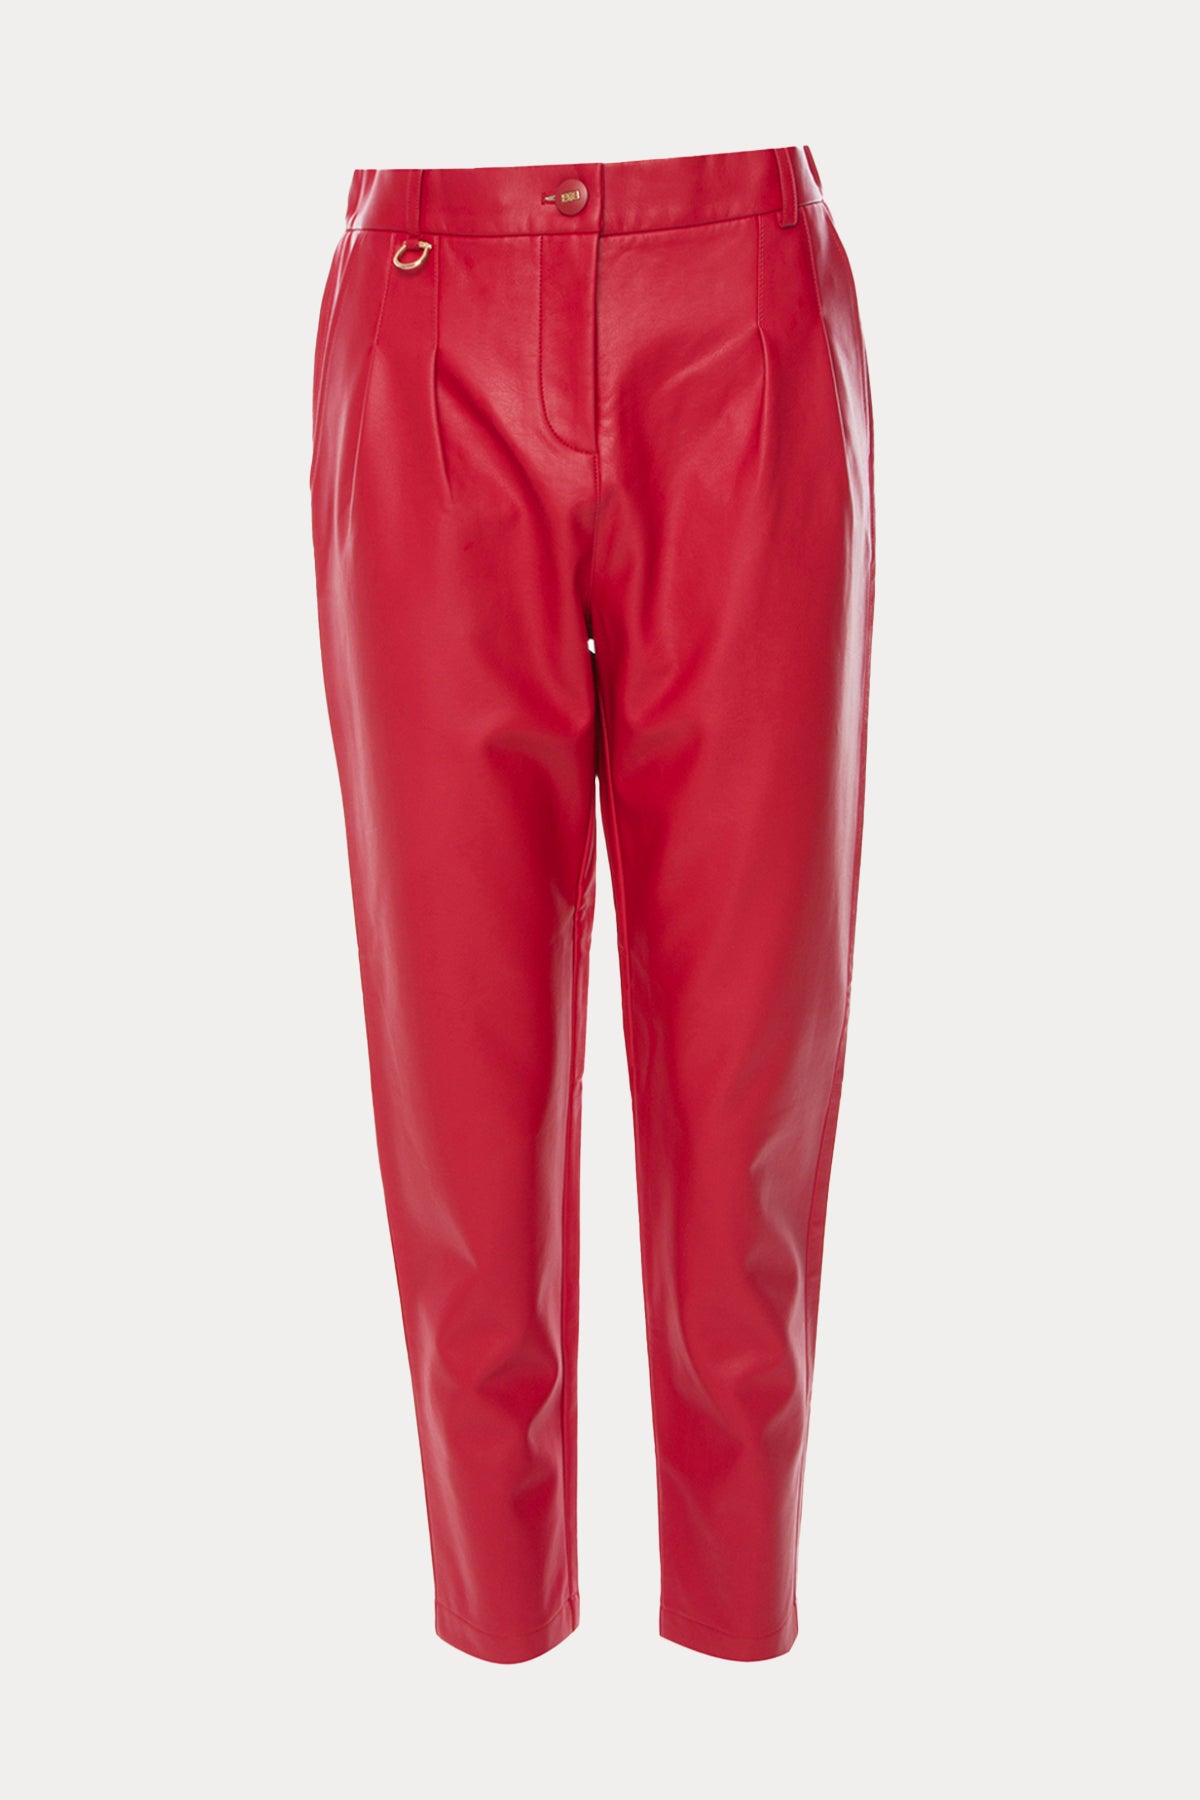 Bsb Tek Pile Yandan Cepli Deri Pantolon-Libas Trendy Fashion Store